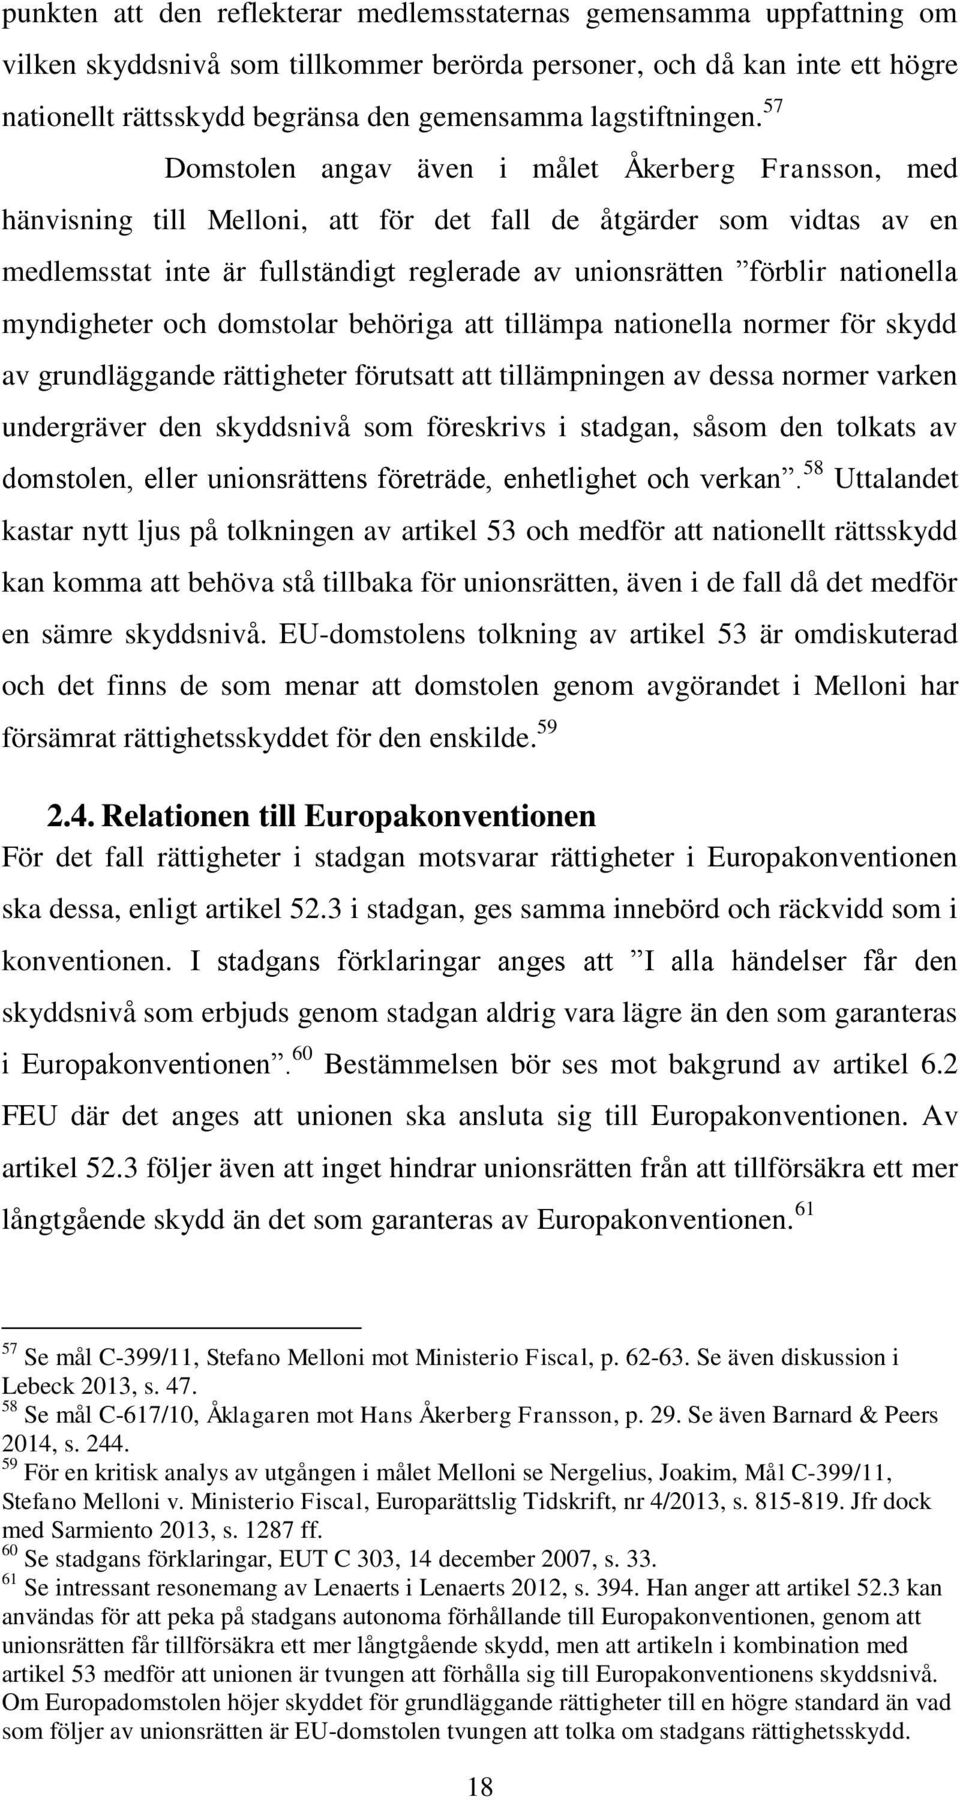 57 Domstolen angav även i målet Åkerberg Fransson, med hänvisning till Melloni, att för det fall de åtgärder som vidtas av en medlemsstat inte är fullständigt reglerade av unionsrätten förblir